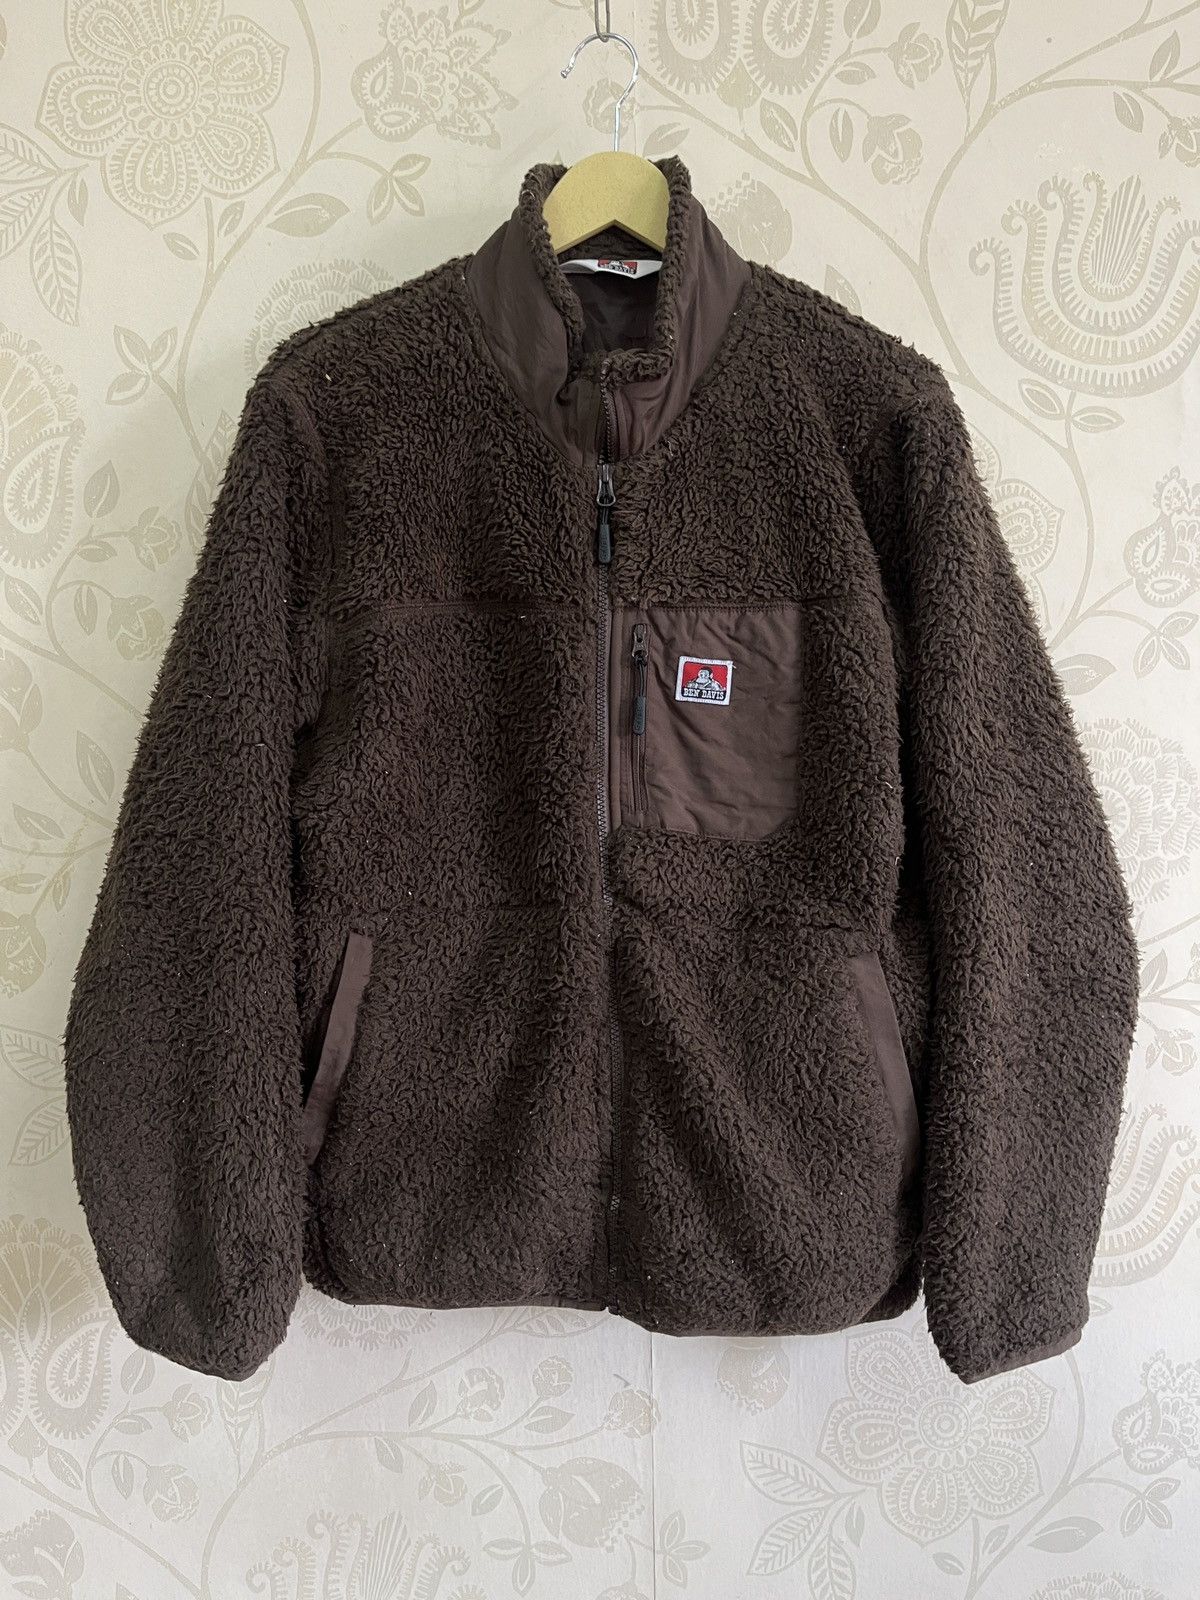 Ben Davis - Vintage Ben Davies Fleece Sweatshirt - 19